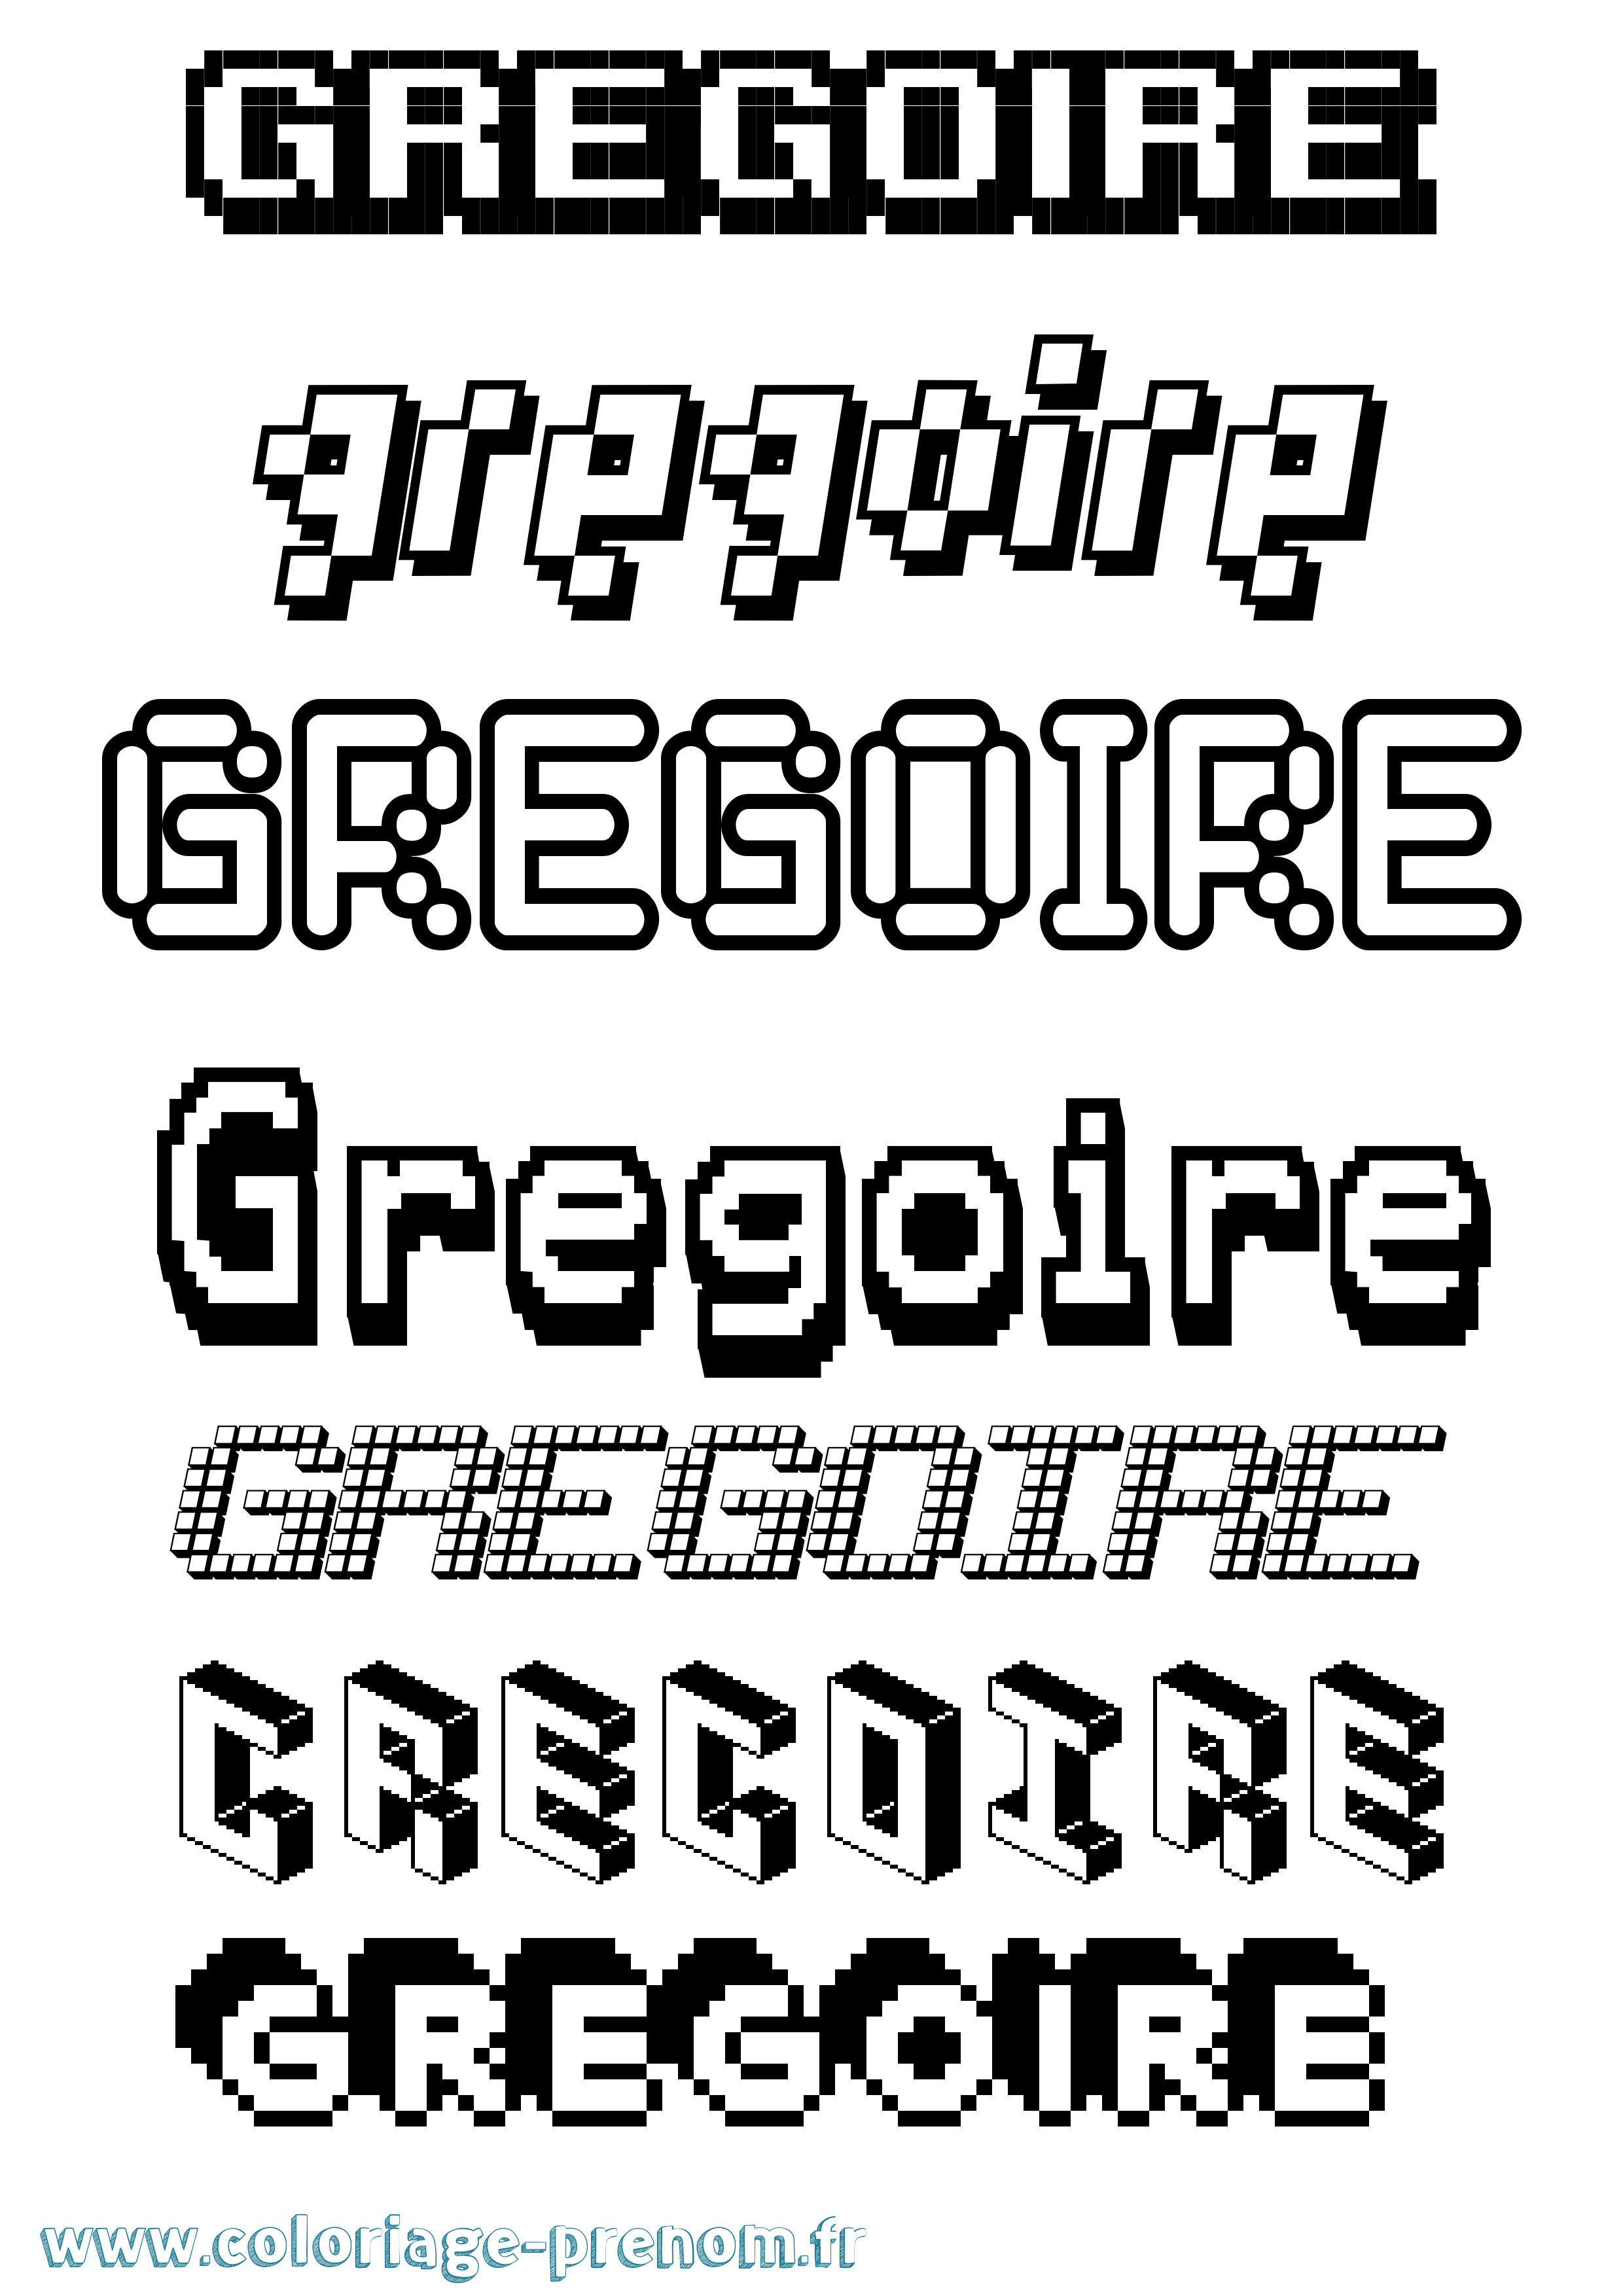 Coloriage prénom Gregoire Pixel